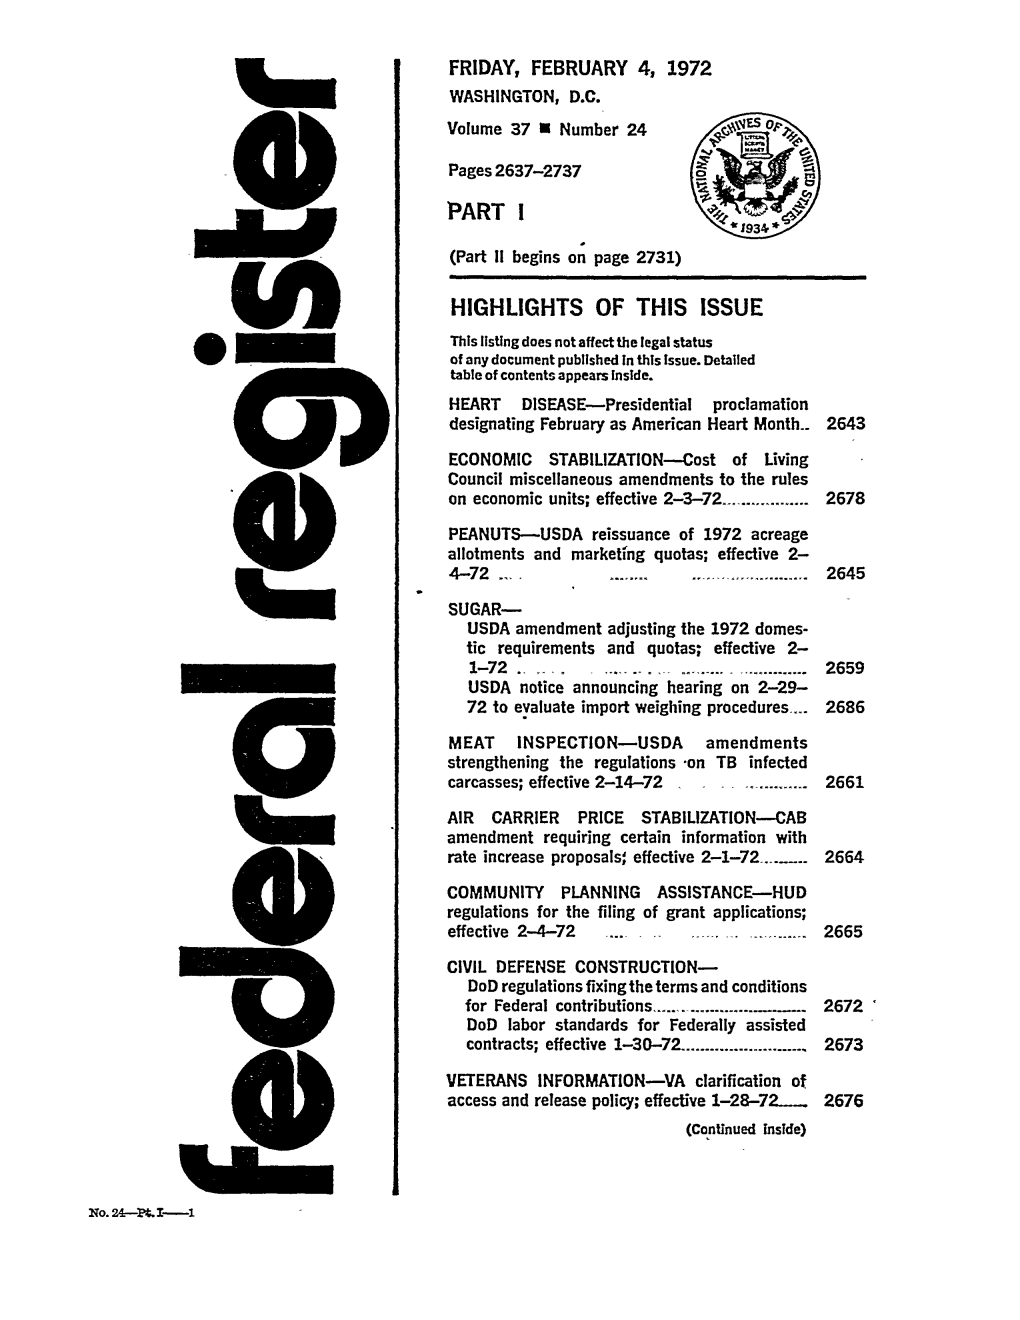 Federal Register: 37 Fed. Reg. 2637 (Feb. 4, 1972)